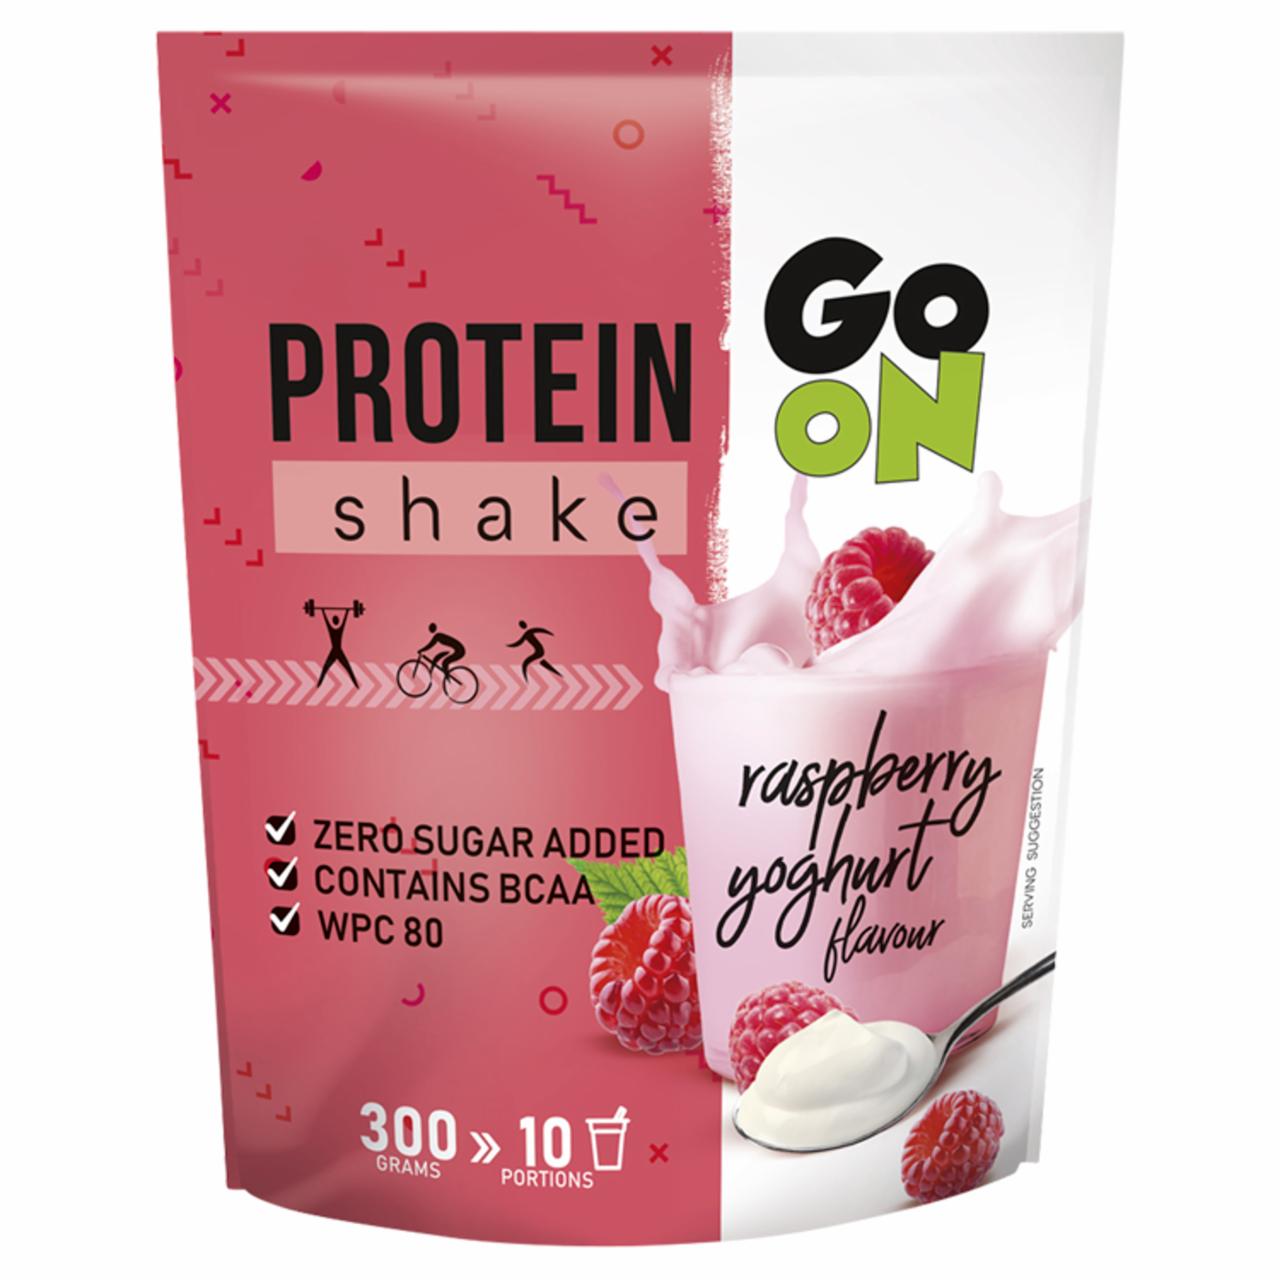 Zdjęcia - Sante Go On Suplement diety shake proteinowy o smaku malinowo-jogurtowym 300 g